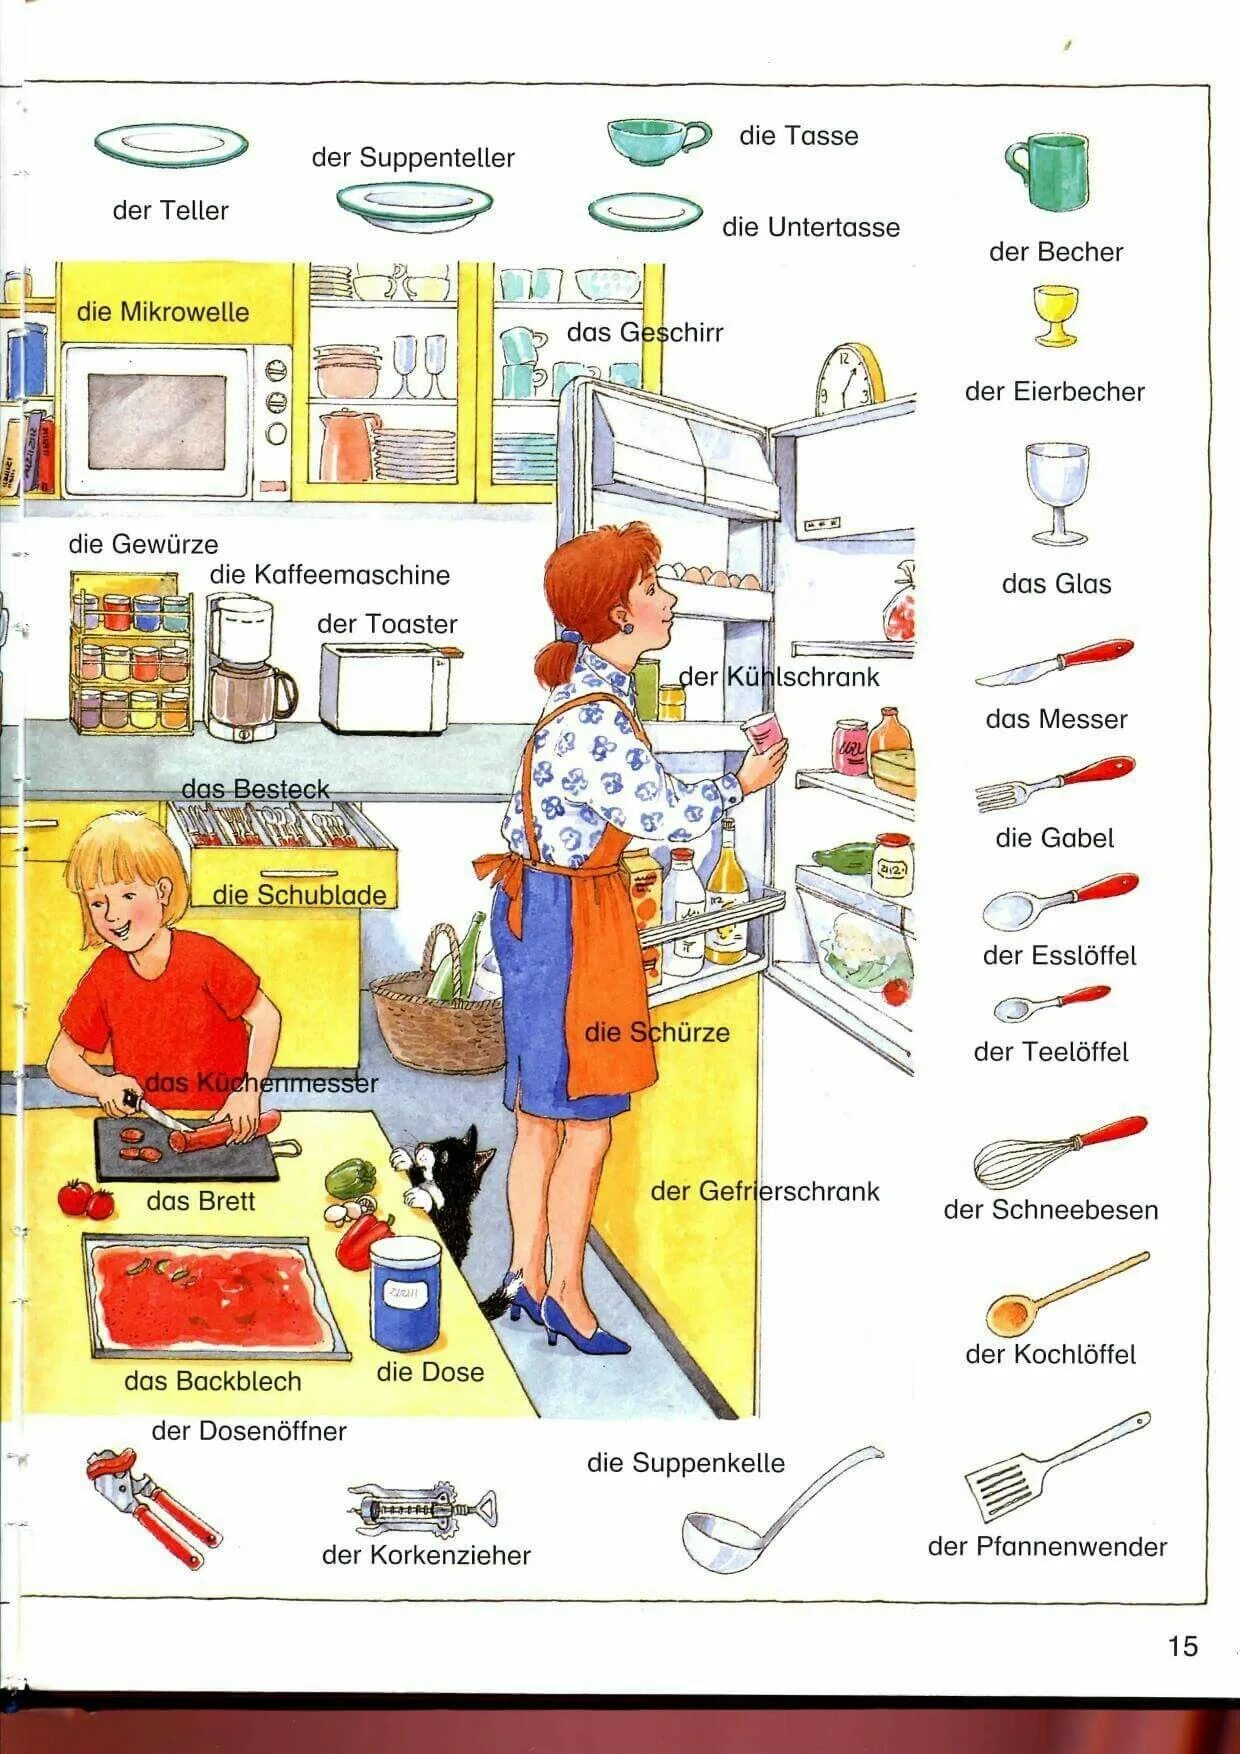 Немецкая лексика по темам. Немецкие слова в картинках по темам. Кухонные предметы на немецком языке. Предметы на кухне на немецком.